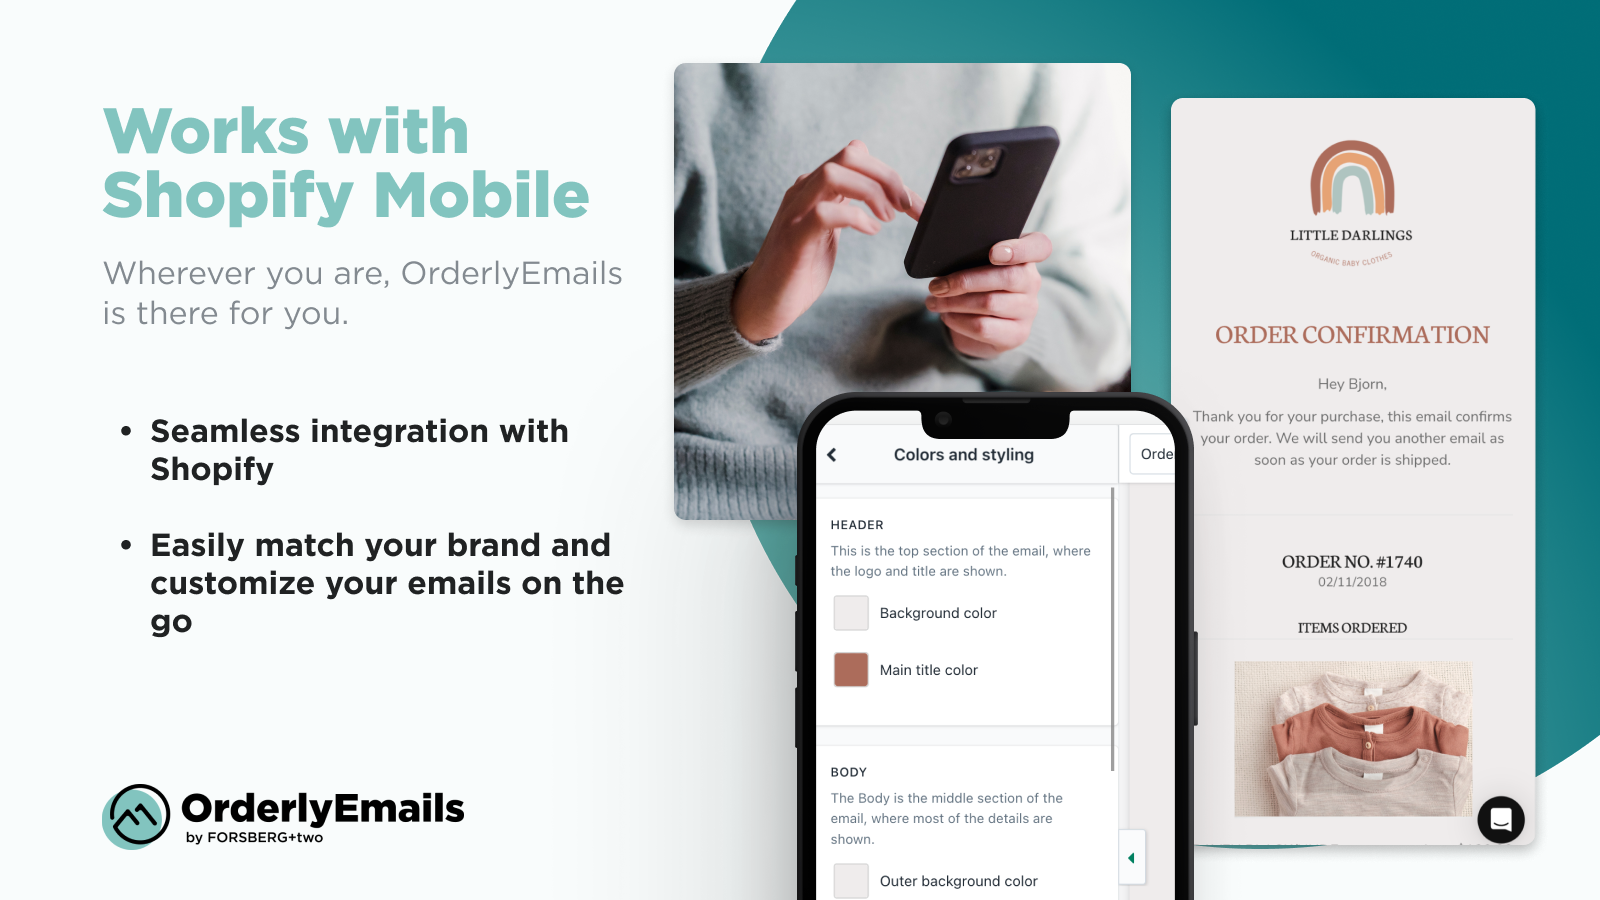 OrderlyEmails: Werkt met Shopify Mobile